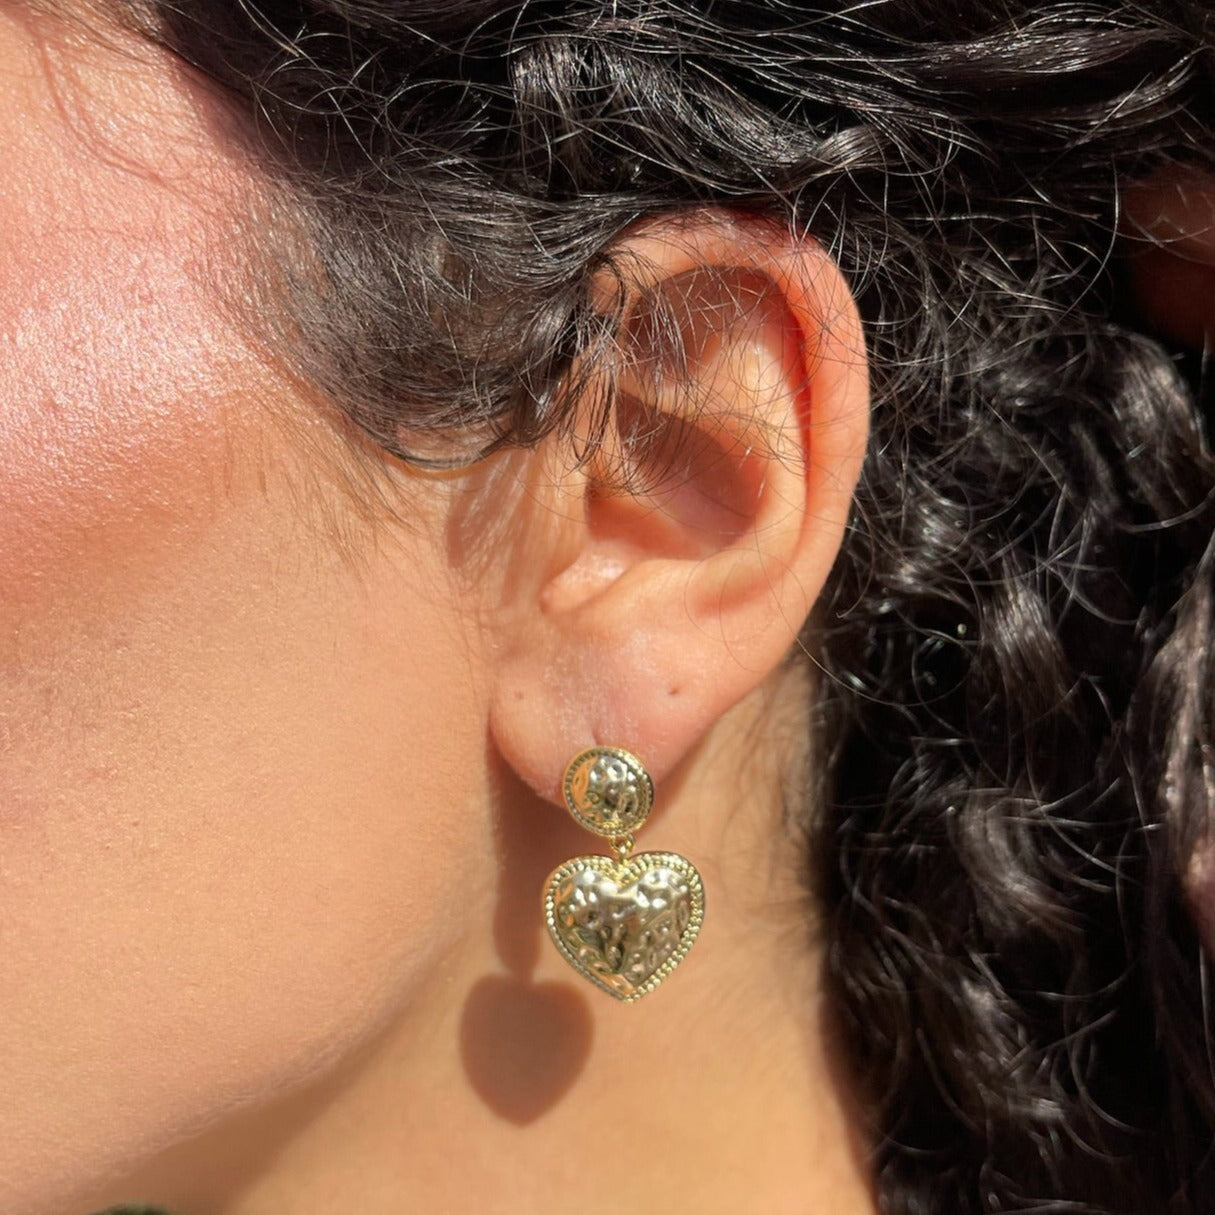 The Heart earrings